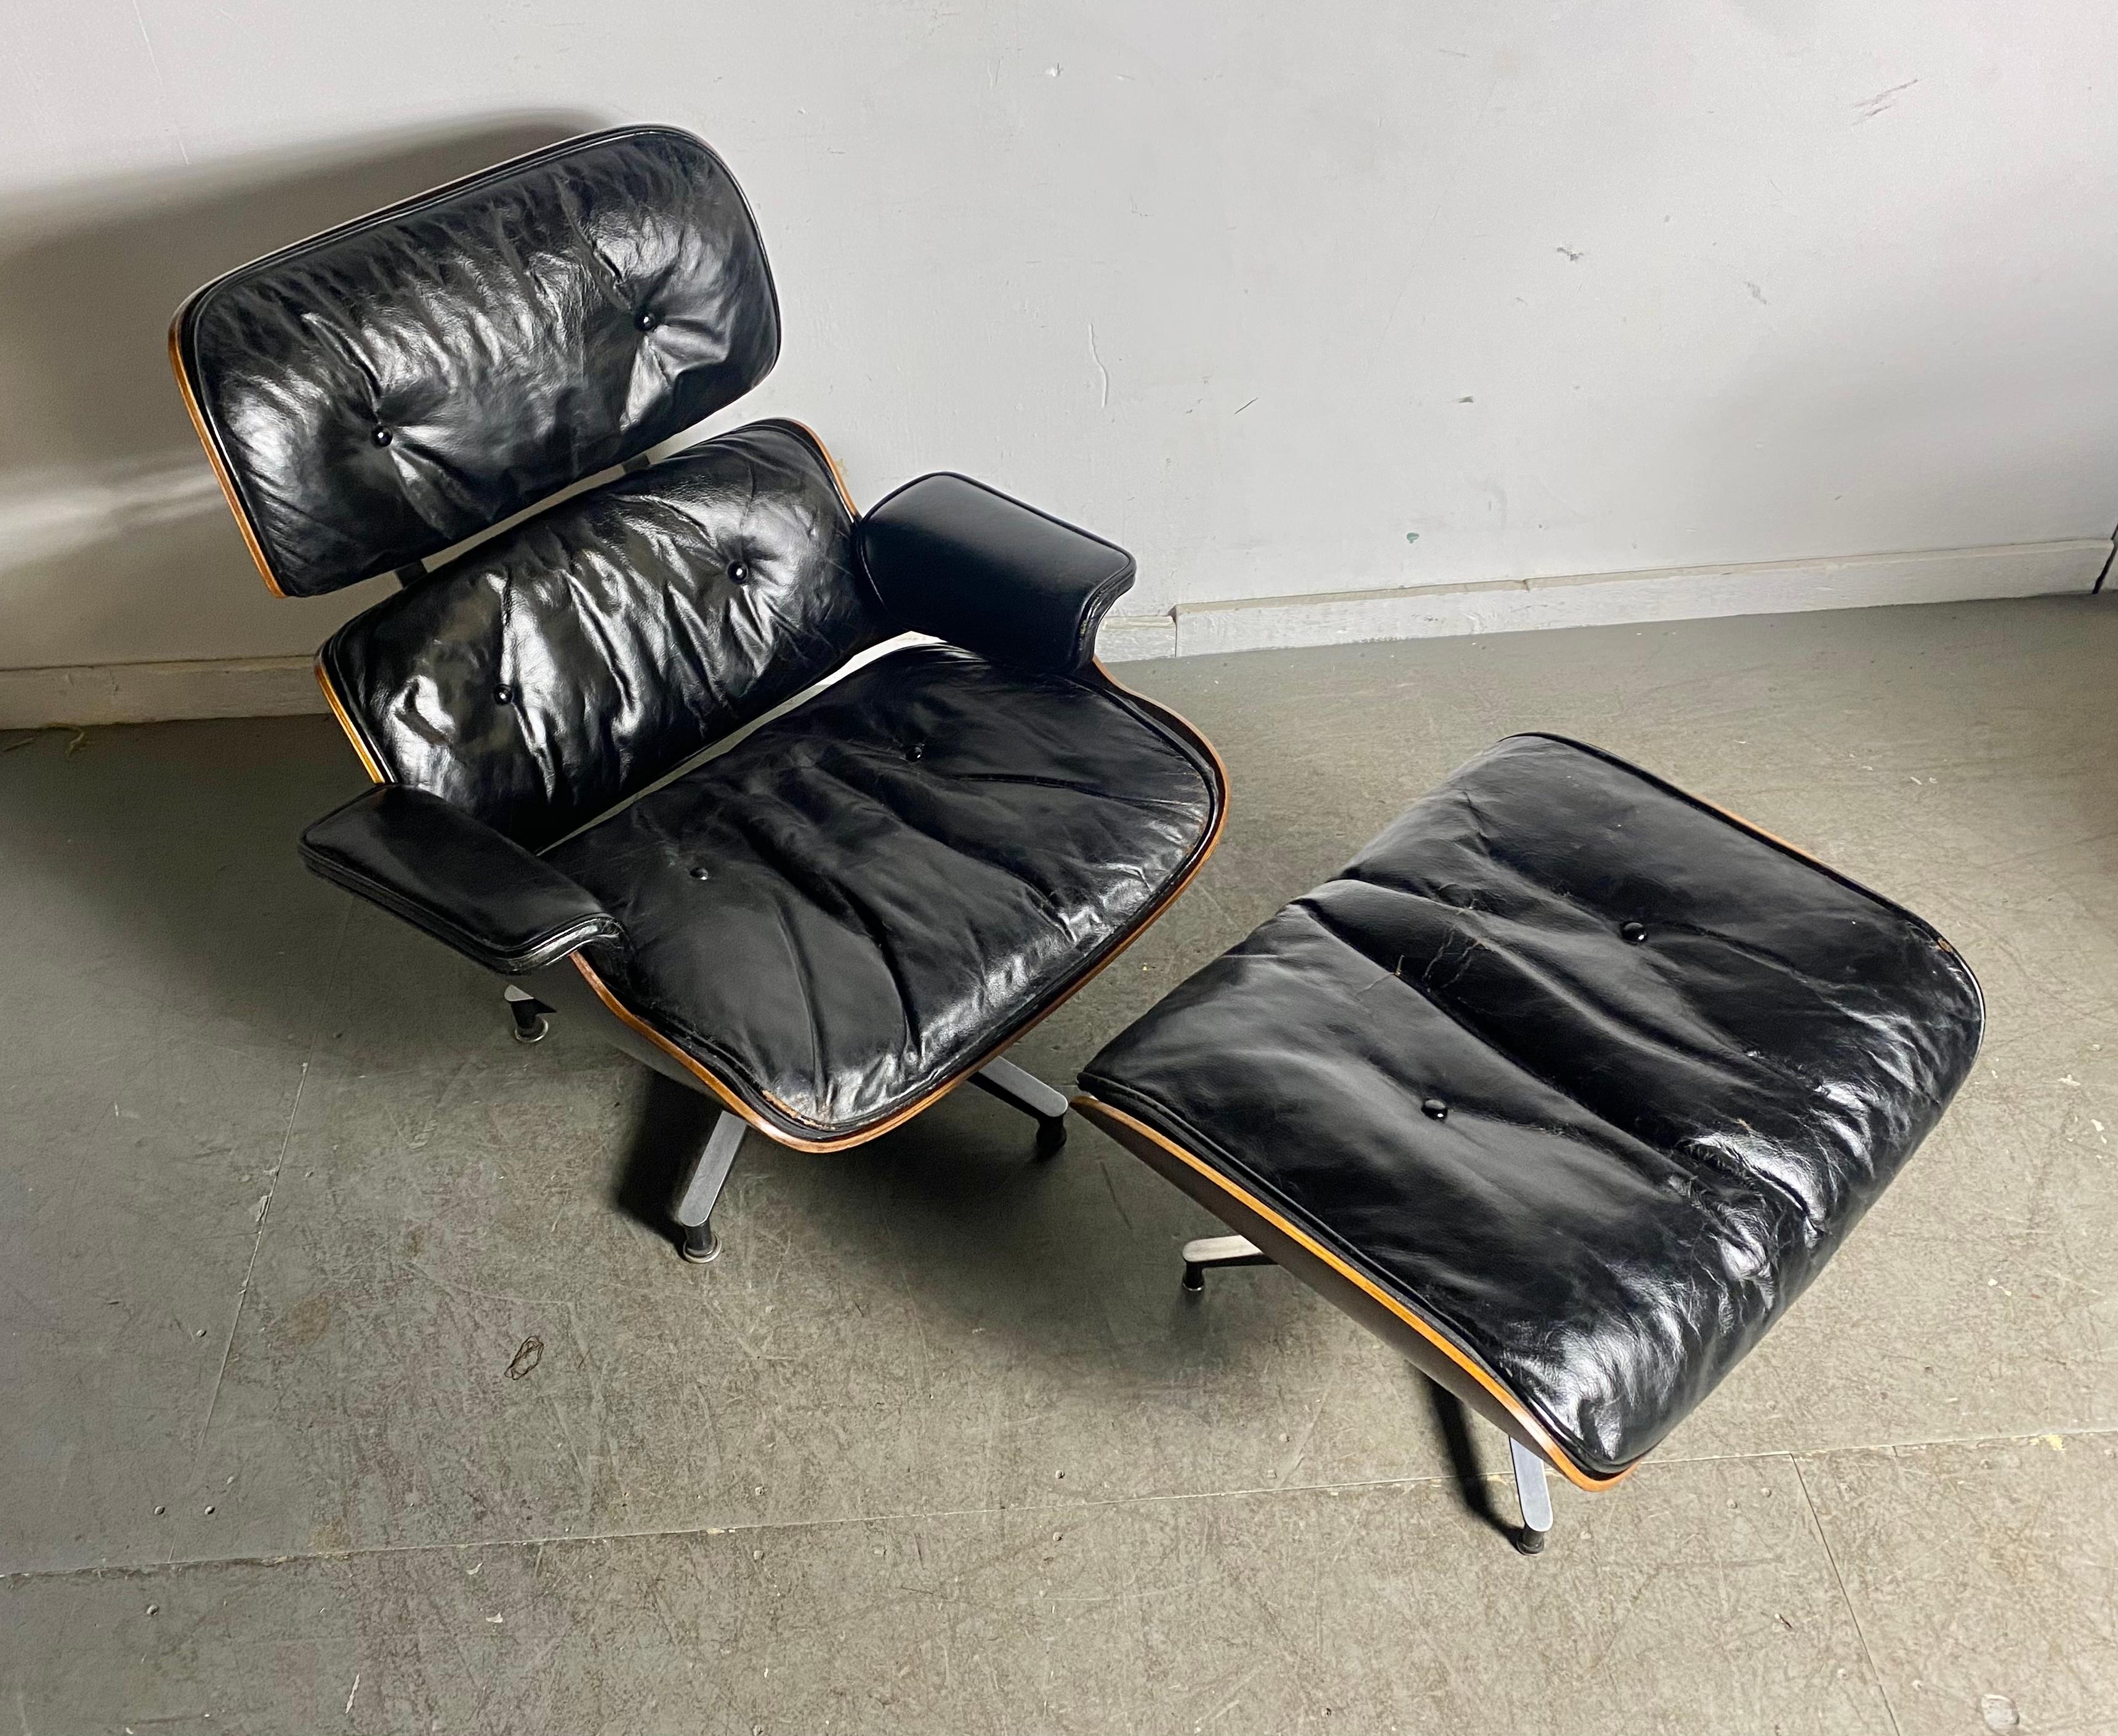 Seltener Charles Eames Lounge Chair und Ottomane der 1. Generation, brasilianisches Palisanderholz, Leder. Hergestellt von Herman Miller. Sehr begehrt, teils wohnliche Investition, teils funktionales Möbel. Ursprünglich 1957-58 gekauft, mit